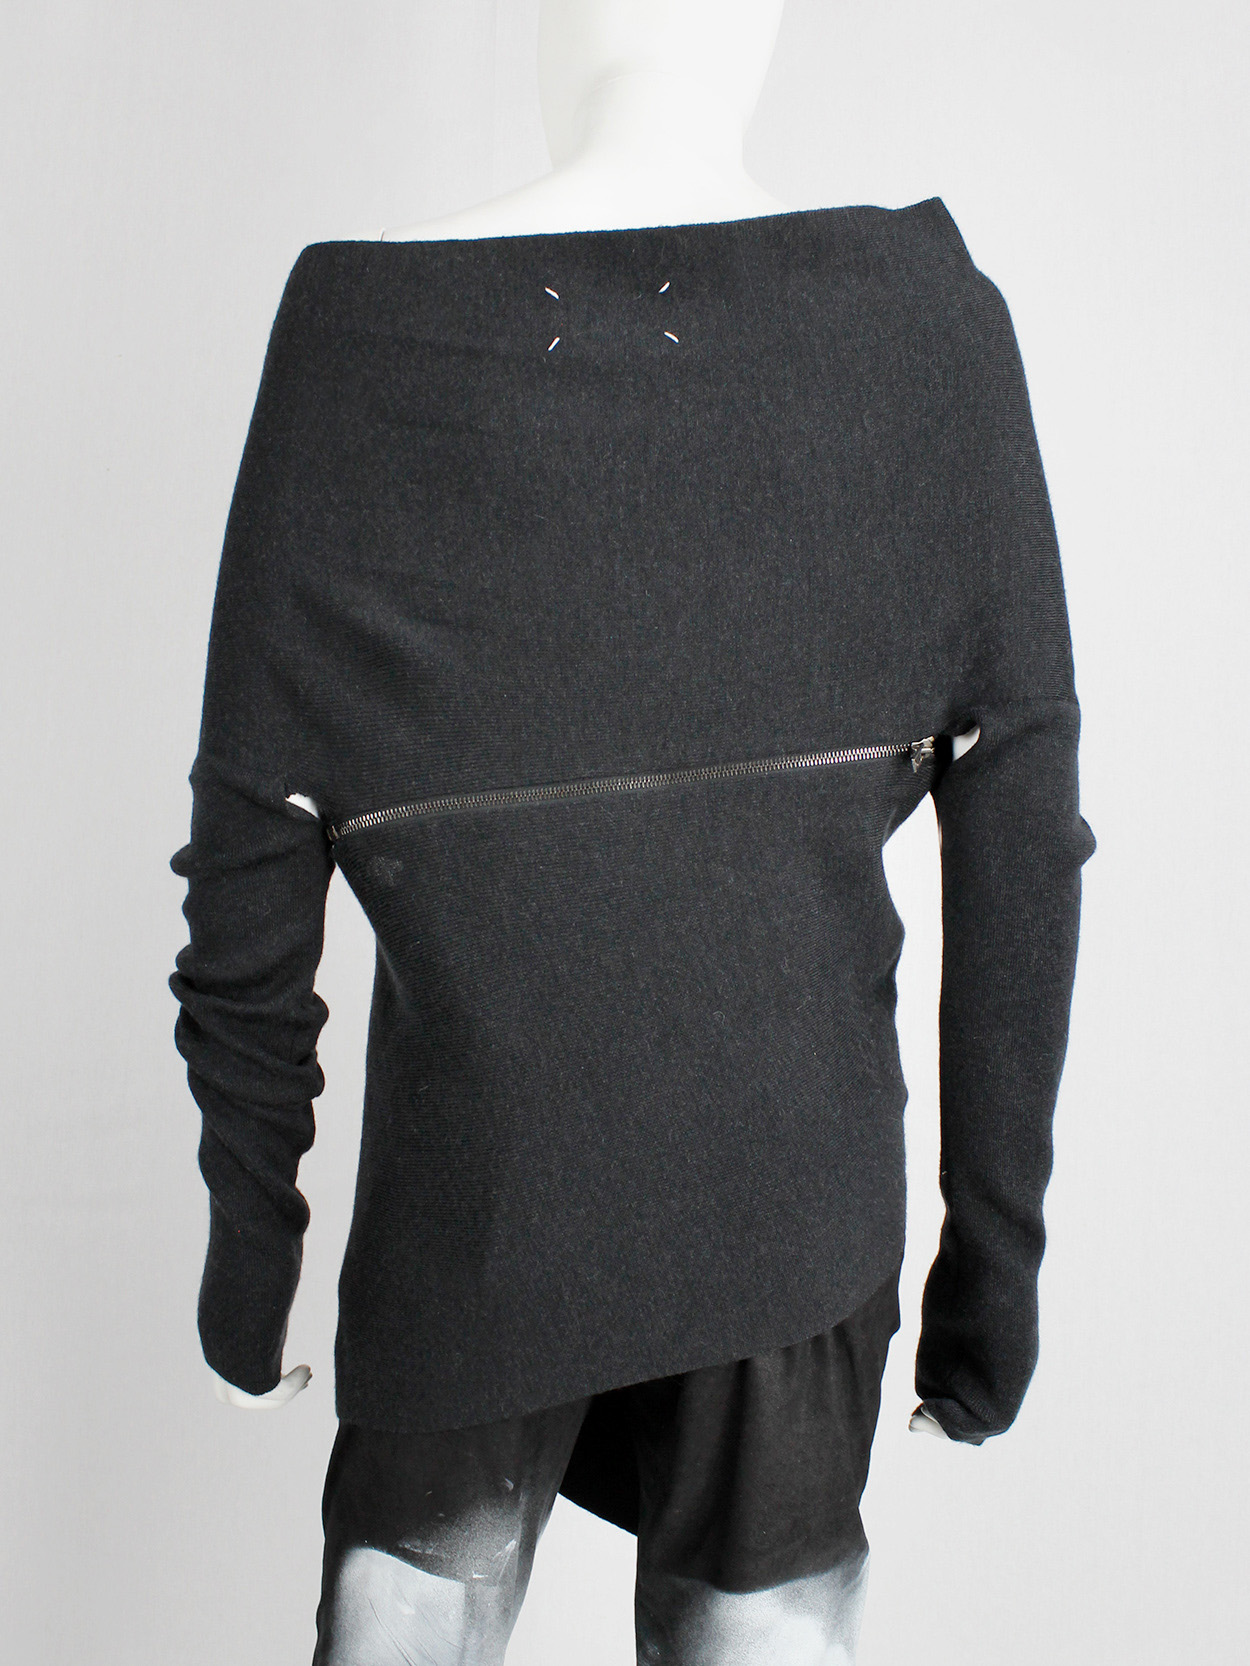 Maison Martin Margiela 1 dark grey jumper with spiral zippers fall 2012 (10)